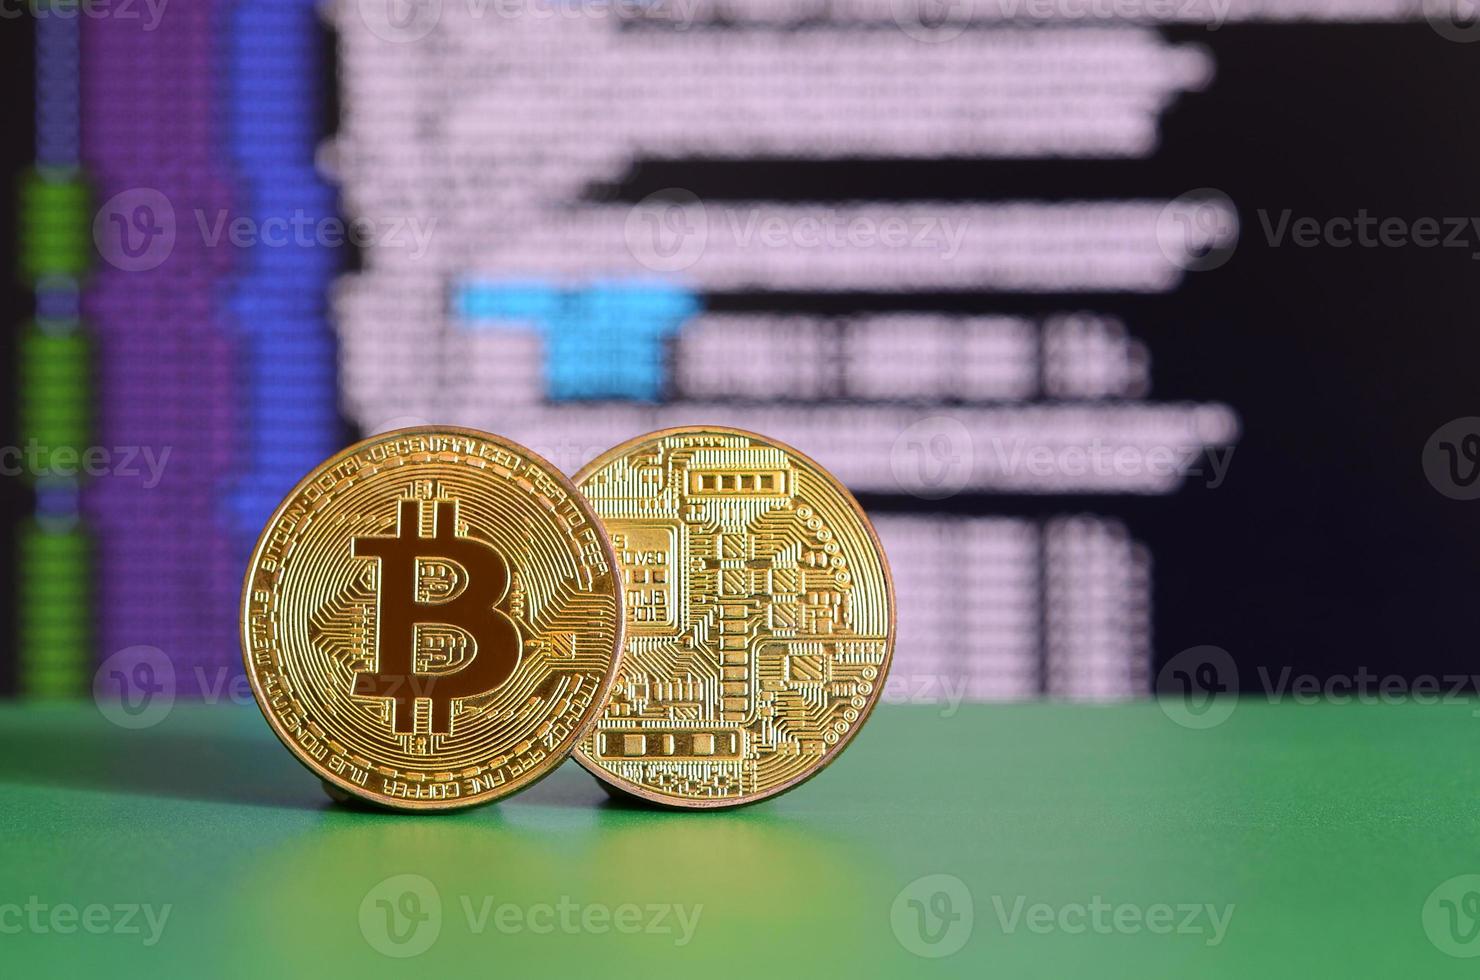 dois bitcoins de ouro estão na superfície verde no fundo da tela, que mostra o processo de mineração da moeda criptográfica foto